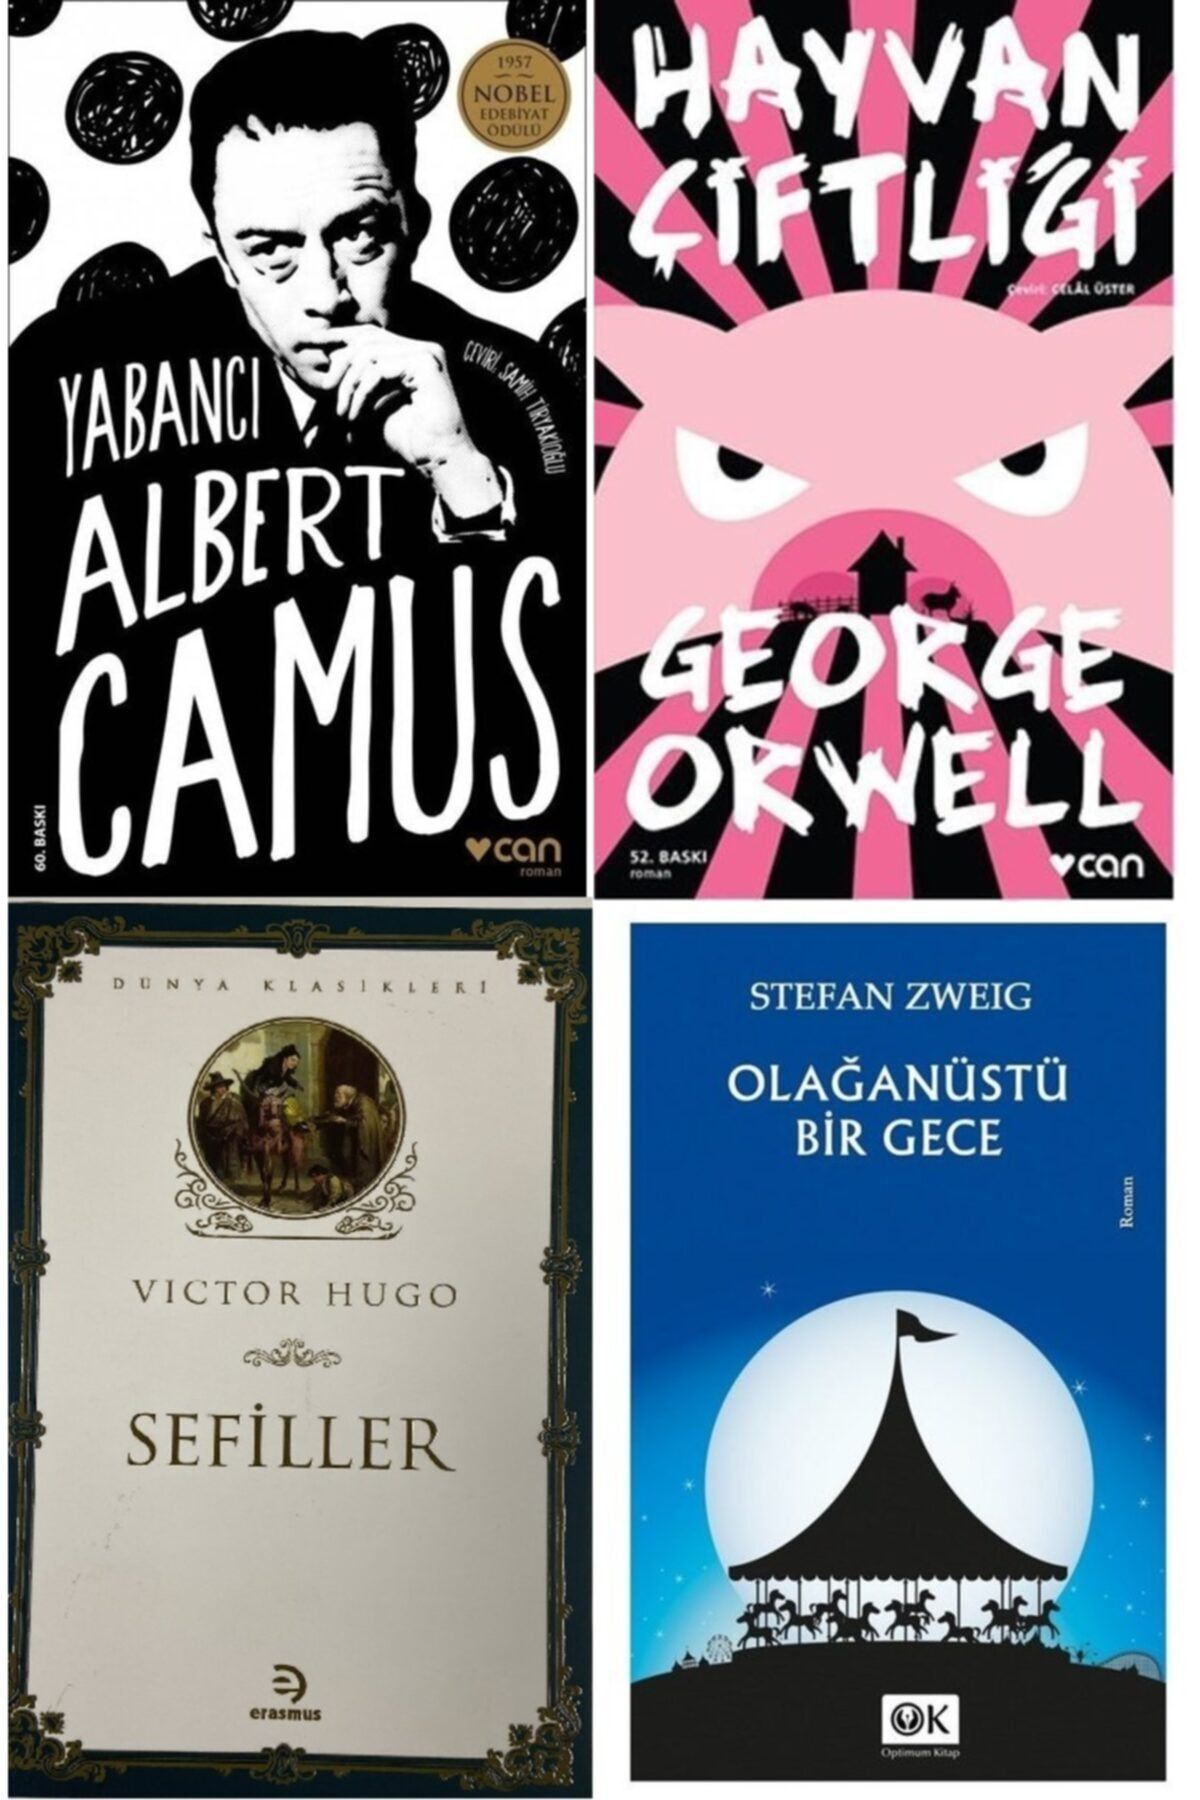 Optimum Kitap Yabancı - Albert Camus, Hayvan Çiftliği - Orwell, Olağanüstü Bir Gece Ve Sefiller Kitap Seti